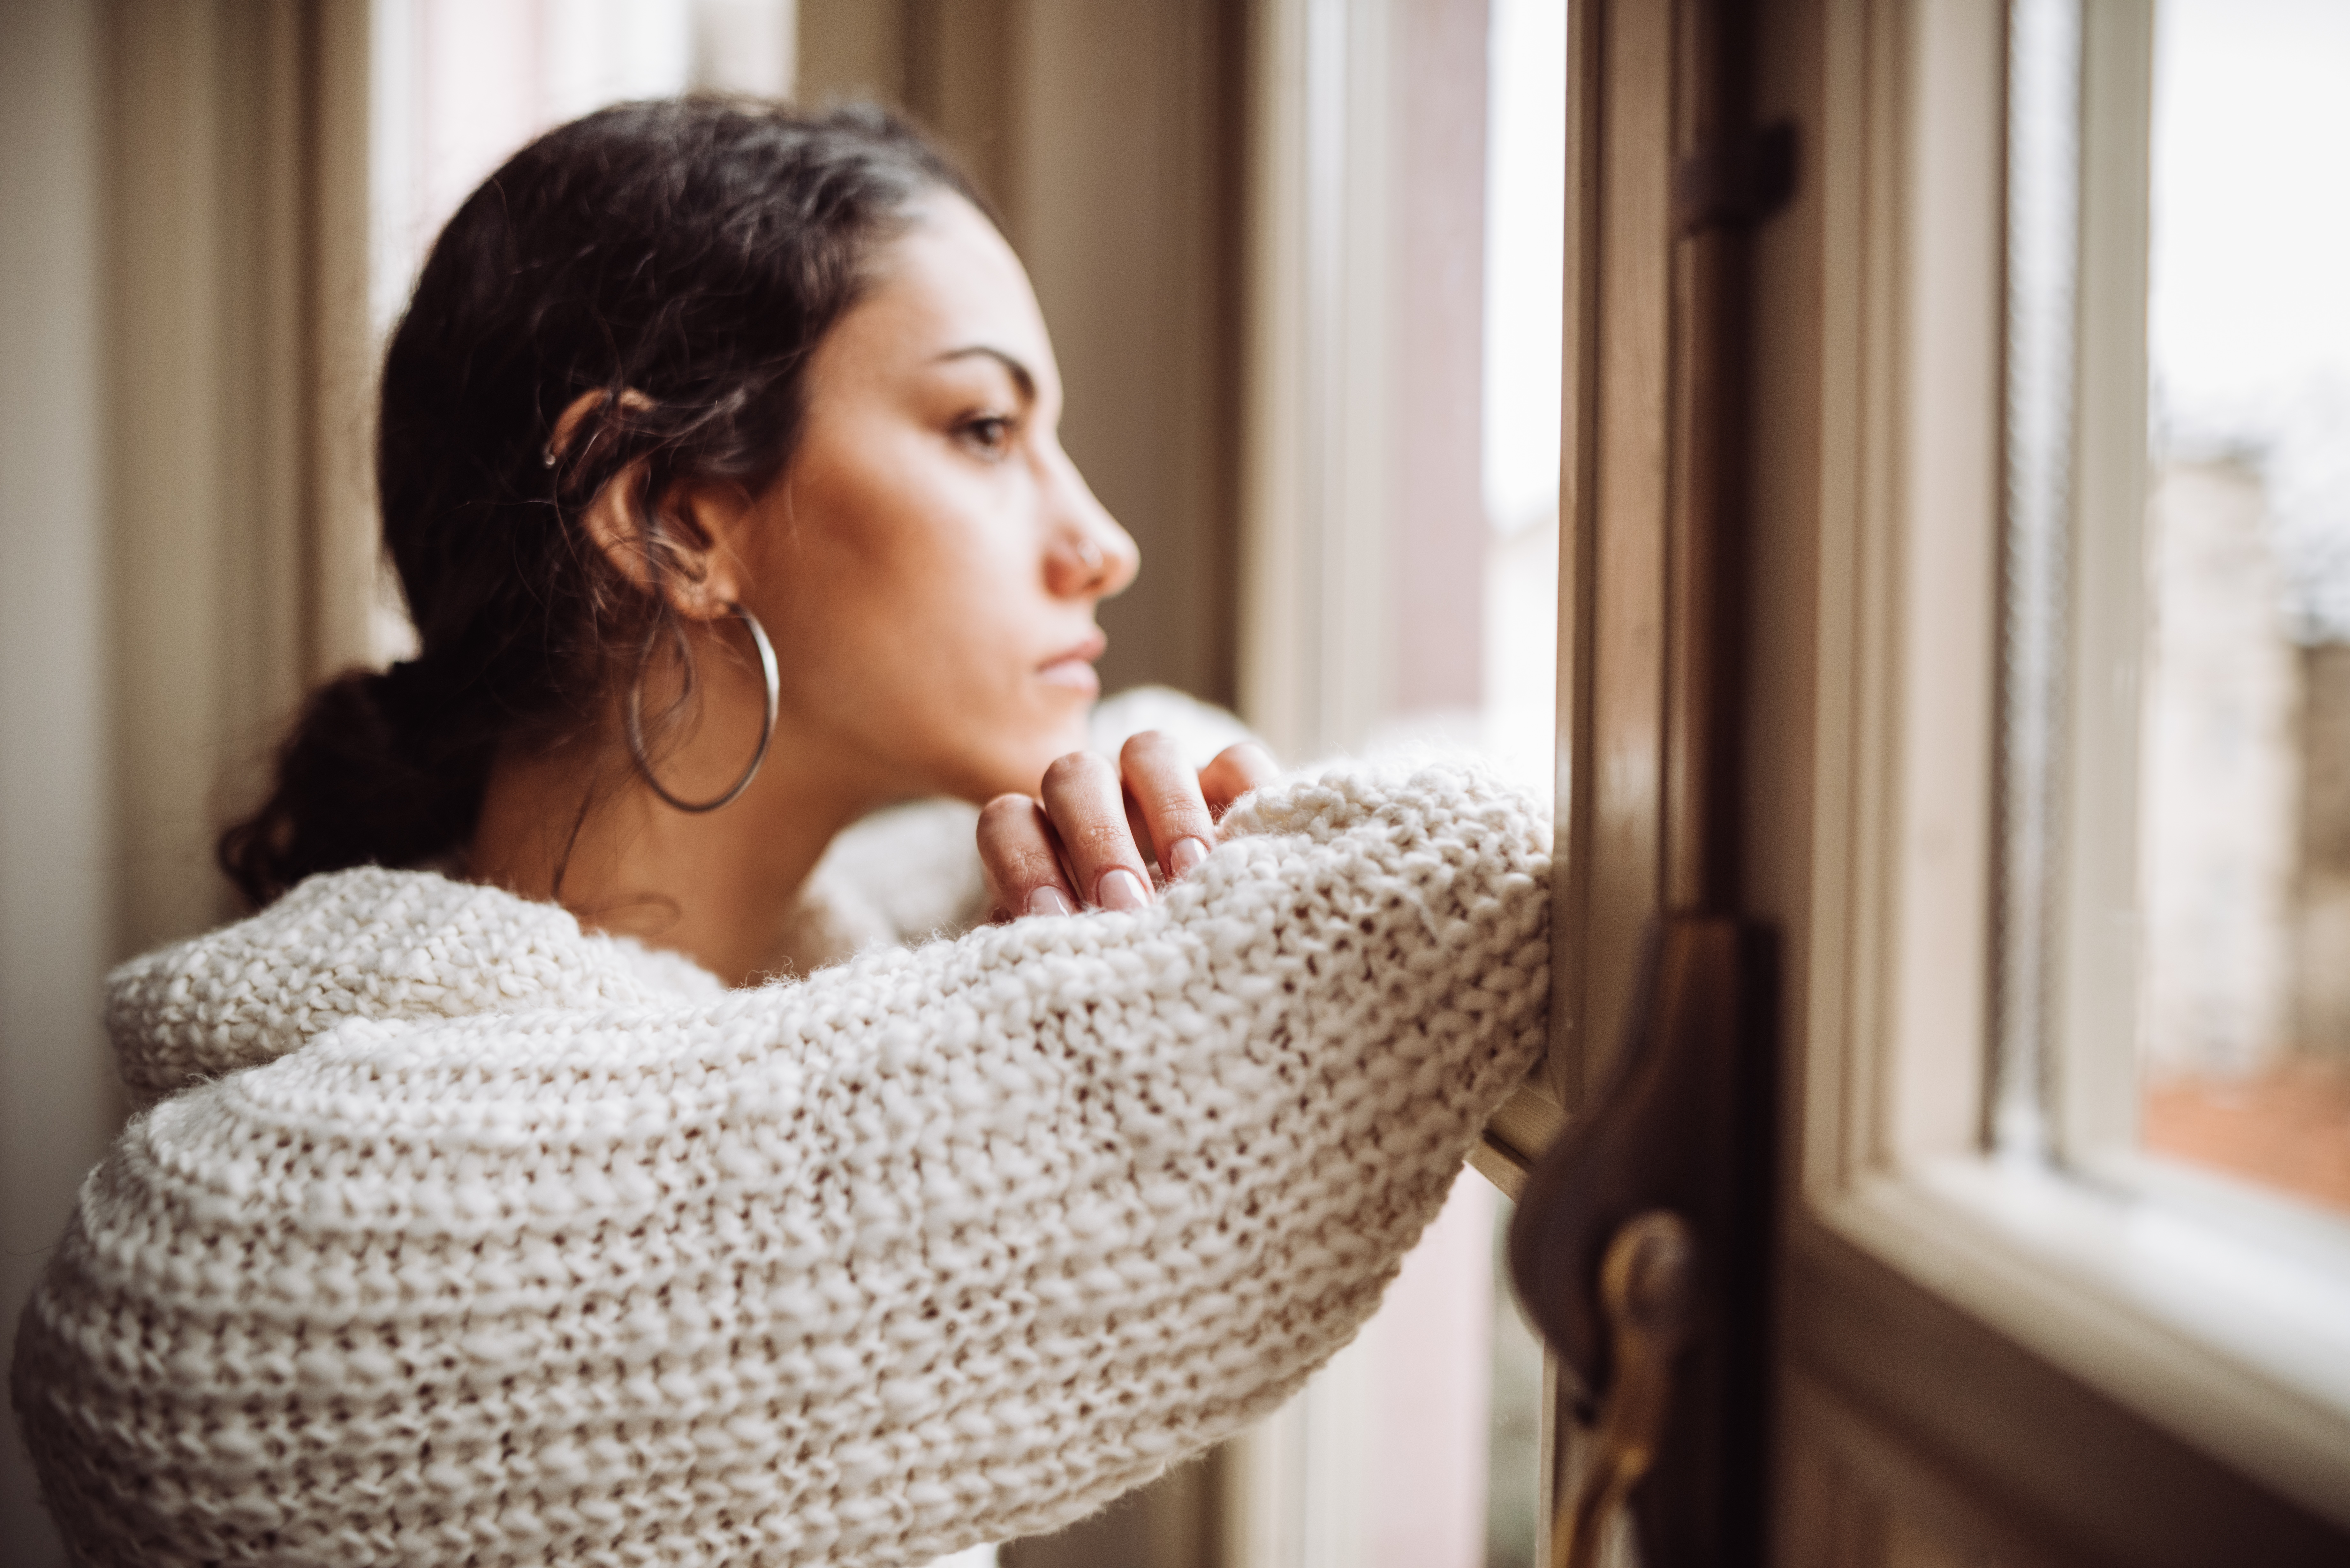 Une femme pensive devant la fenêtre | Source : Getty Images